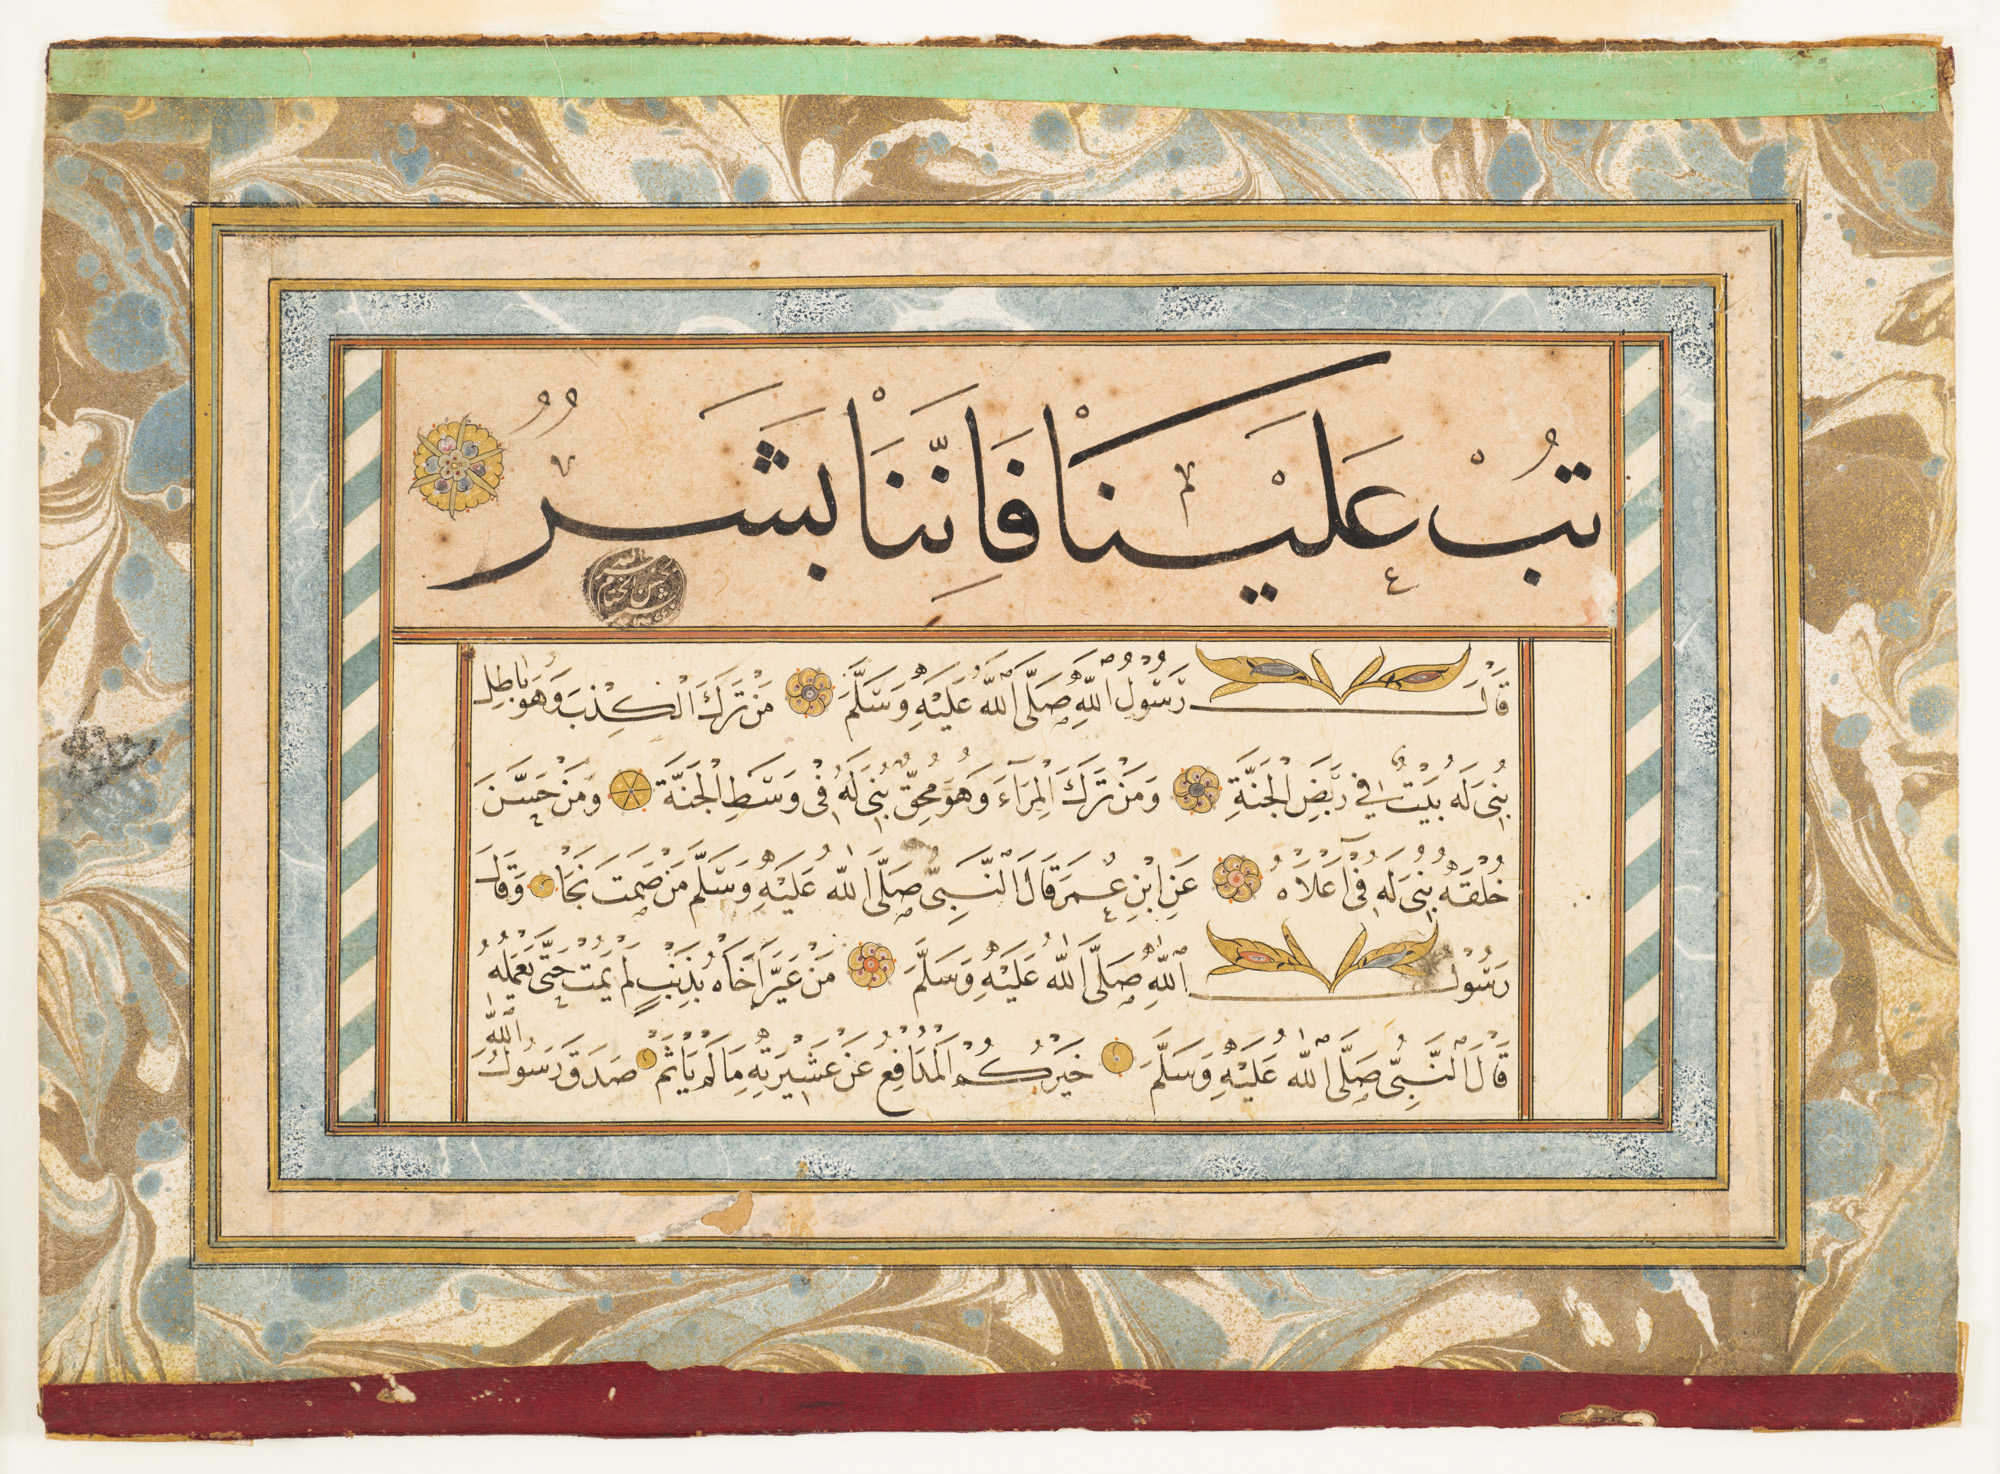 احاديث رسول الله صلى الله عليه وسلم  by غير معروف فنان - القرن الثامن عشر 